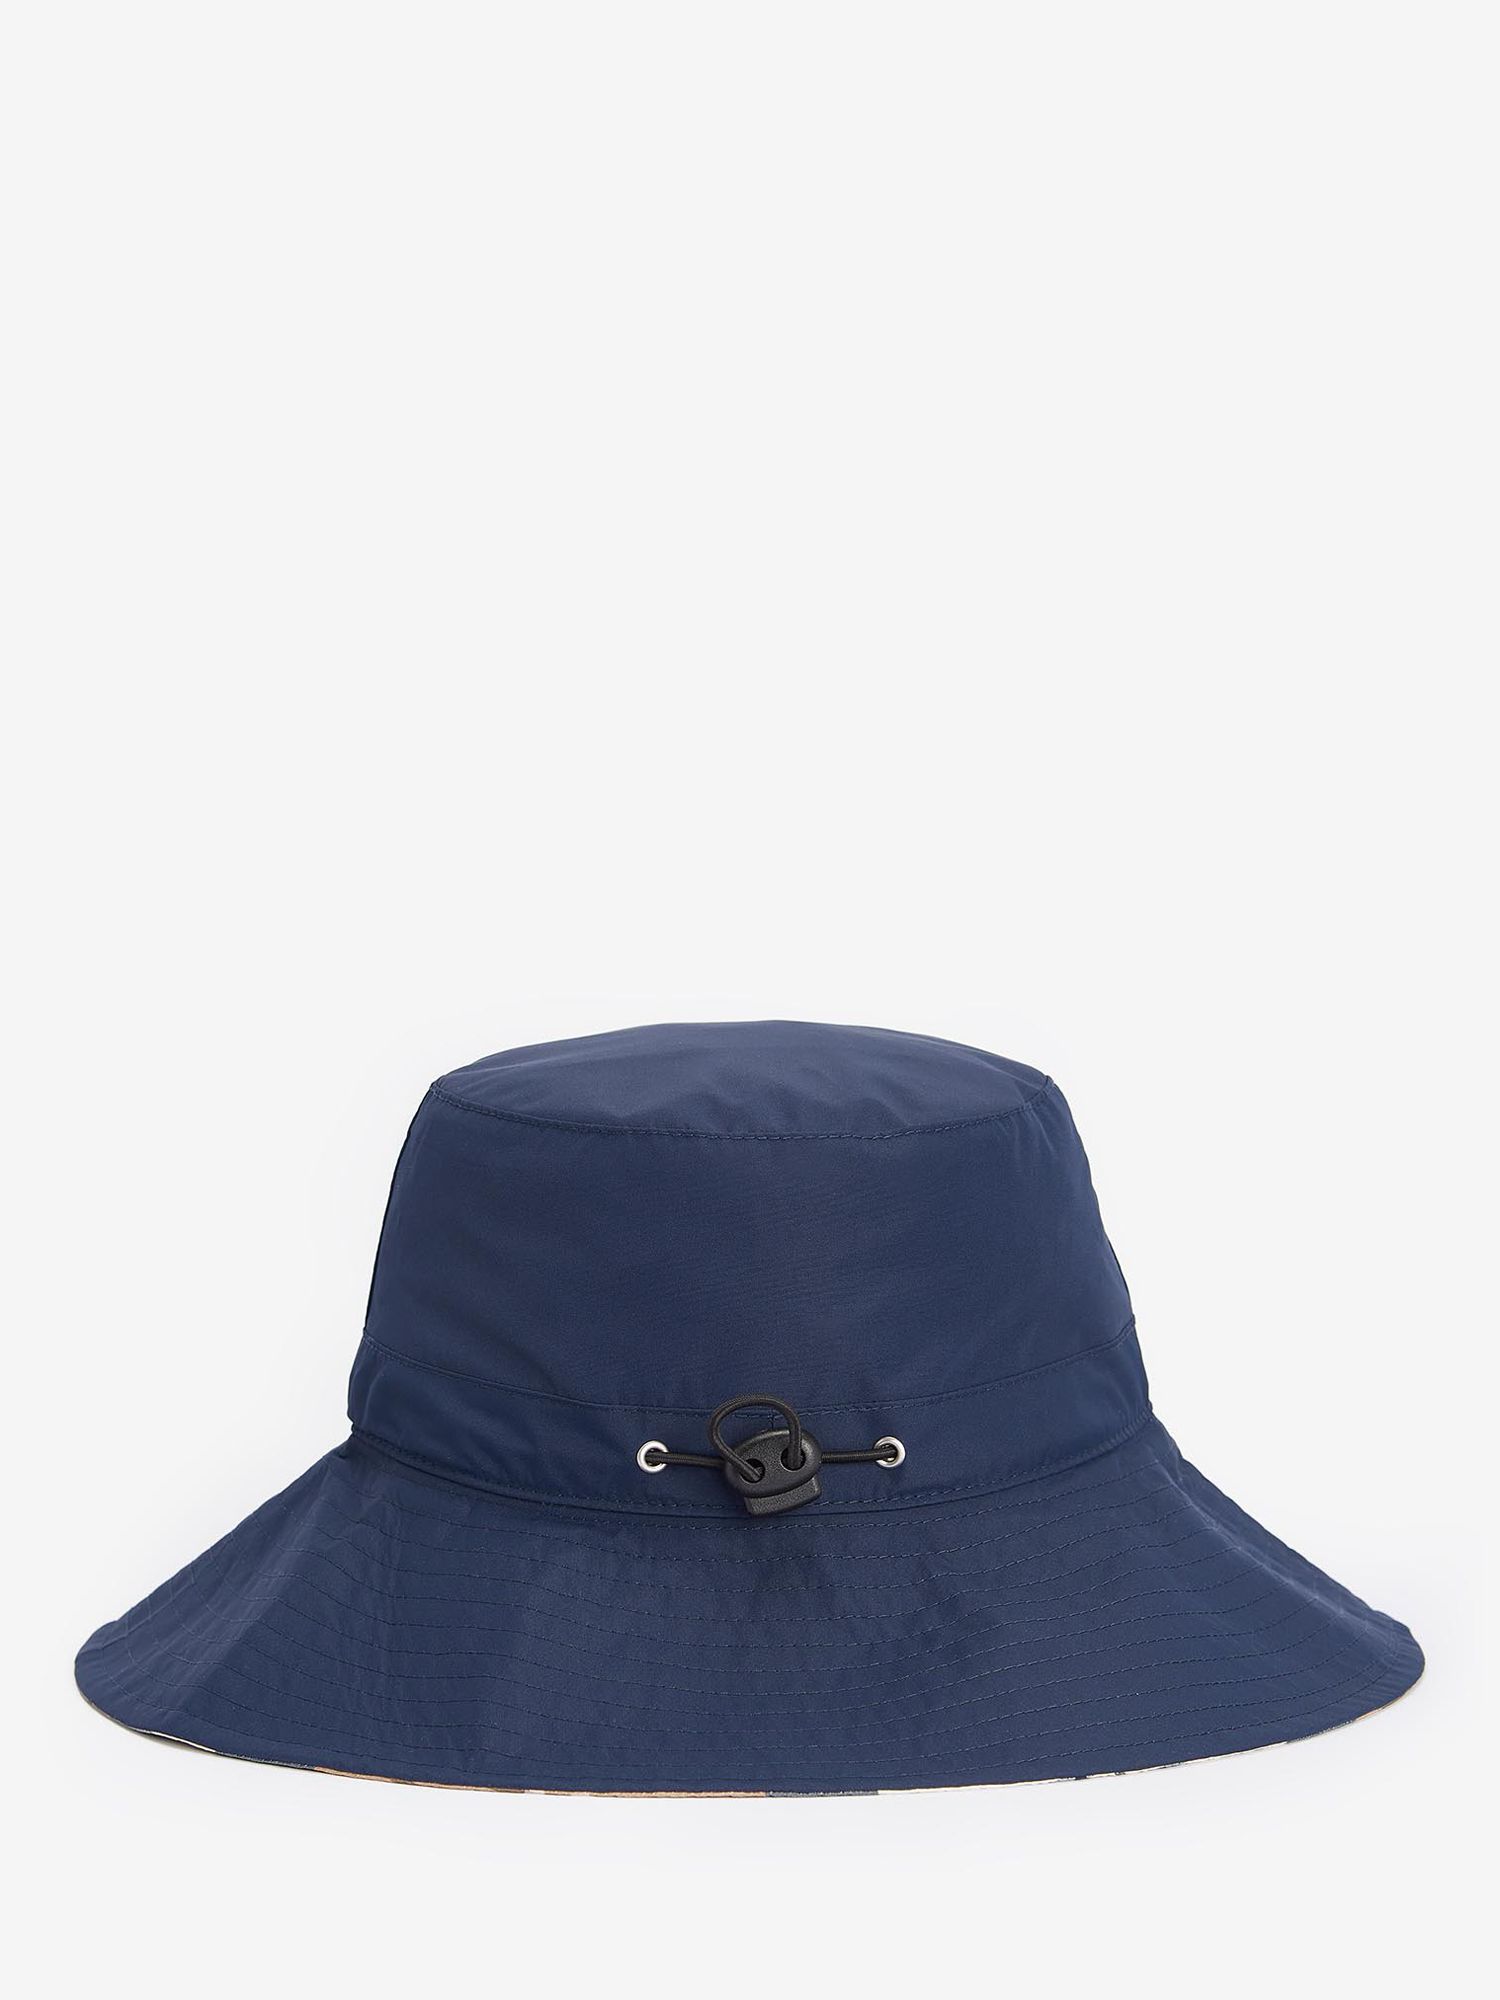 Barbour Annie Bucket Hat, Navy, L-XL